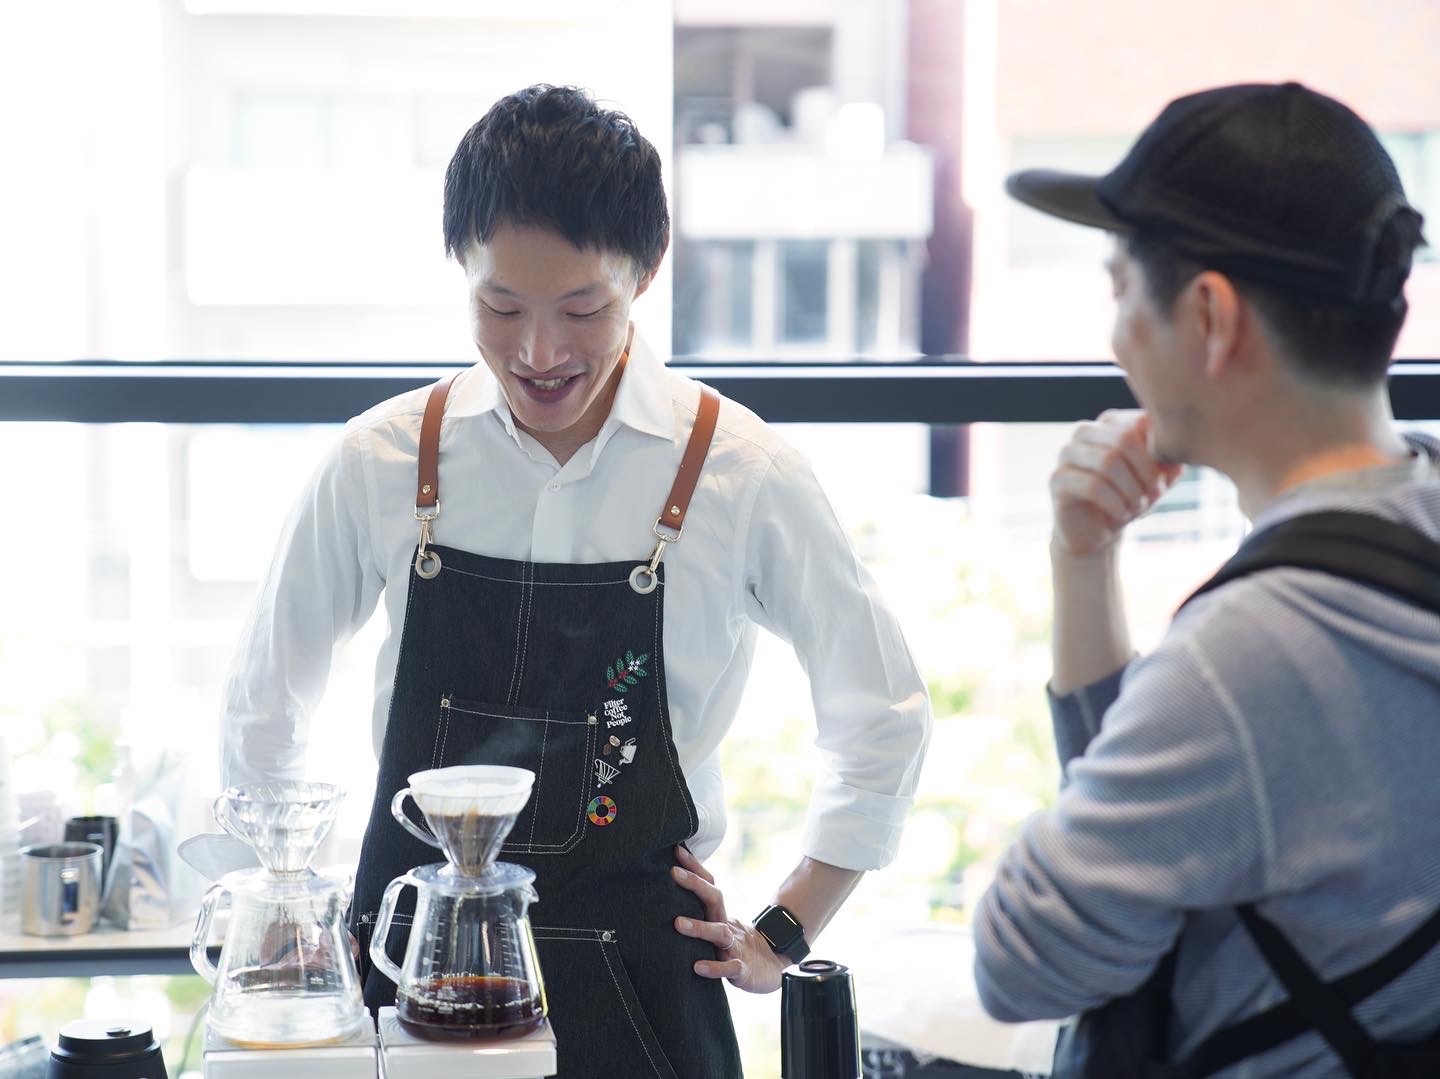 【IMOM COFFEE ROASTERS/愛知県⻑久⼿市】日常の中でちょっと特別な時間を過ごせたり、ほっと落ち着く場所